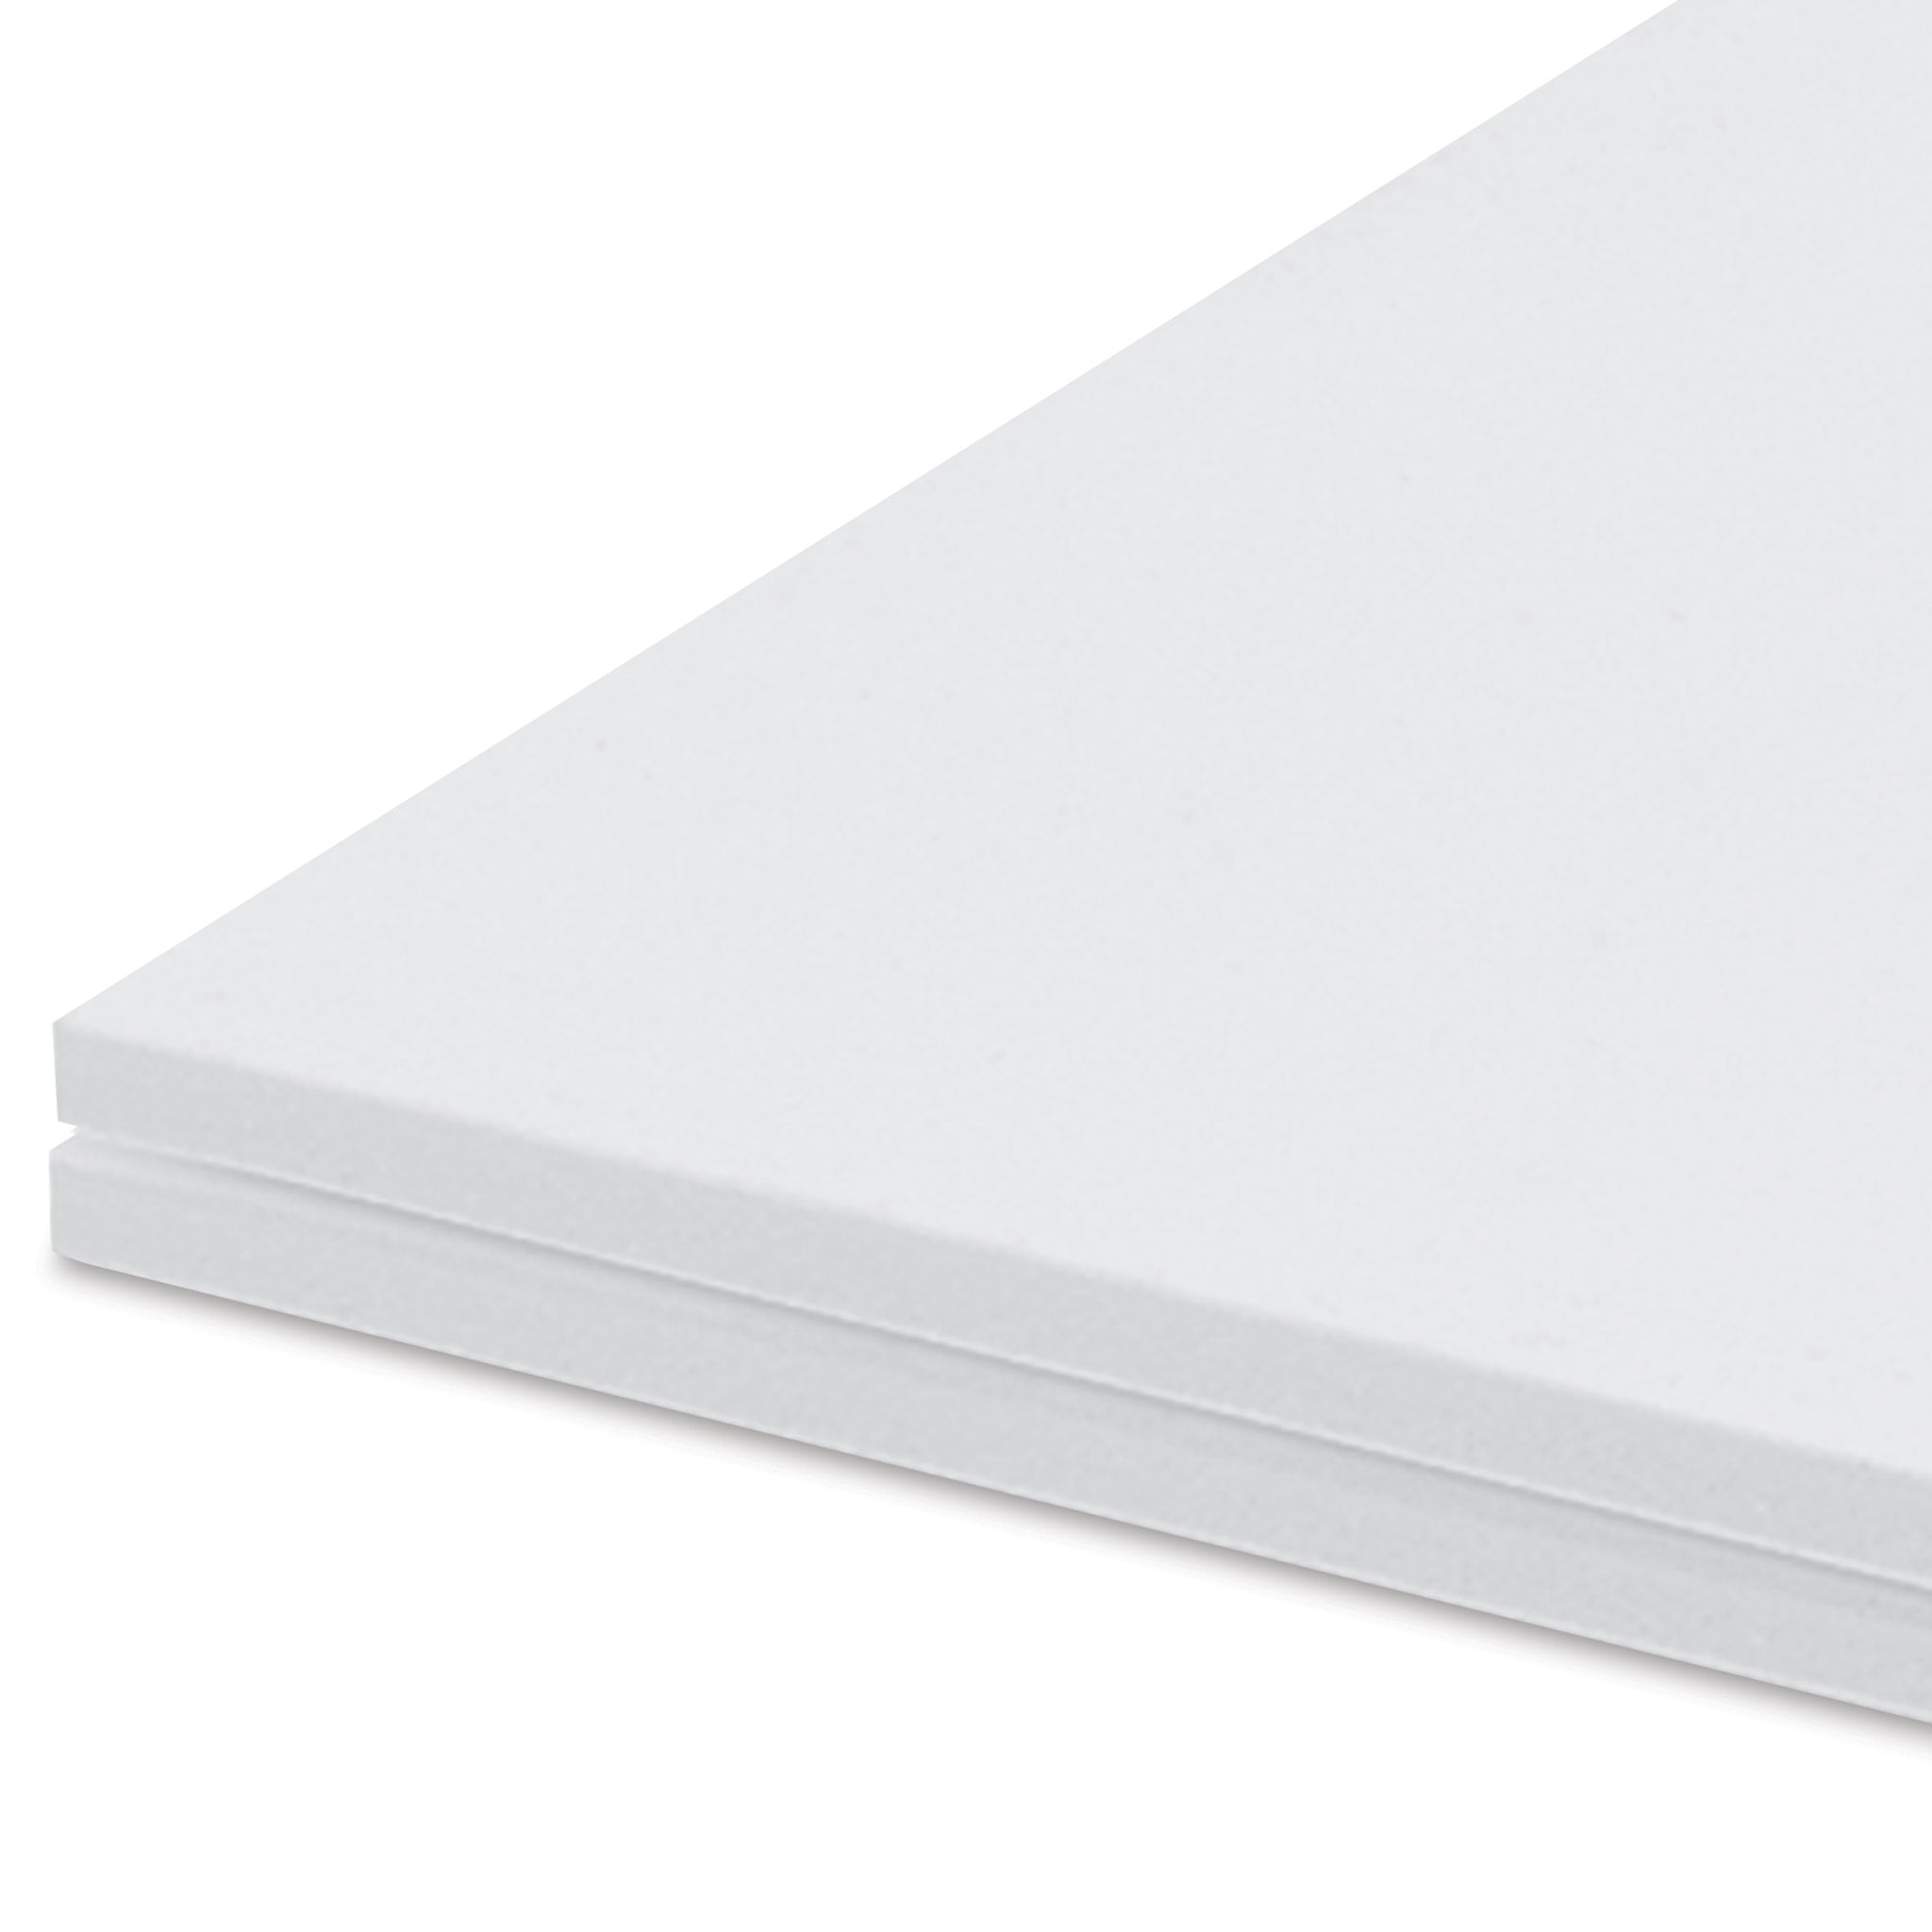 Uxcell 12x16 300x400mm Foam Sheet for Crafts Foam Boards Foam Paper Sheets  for Art, Black 5 Pack 